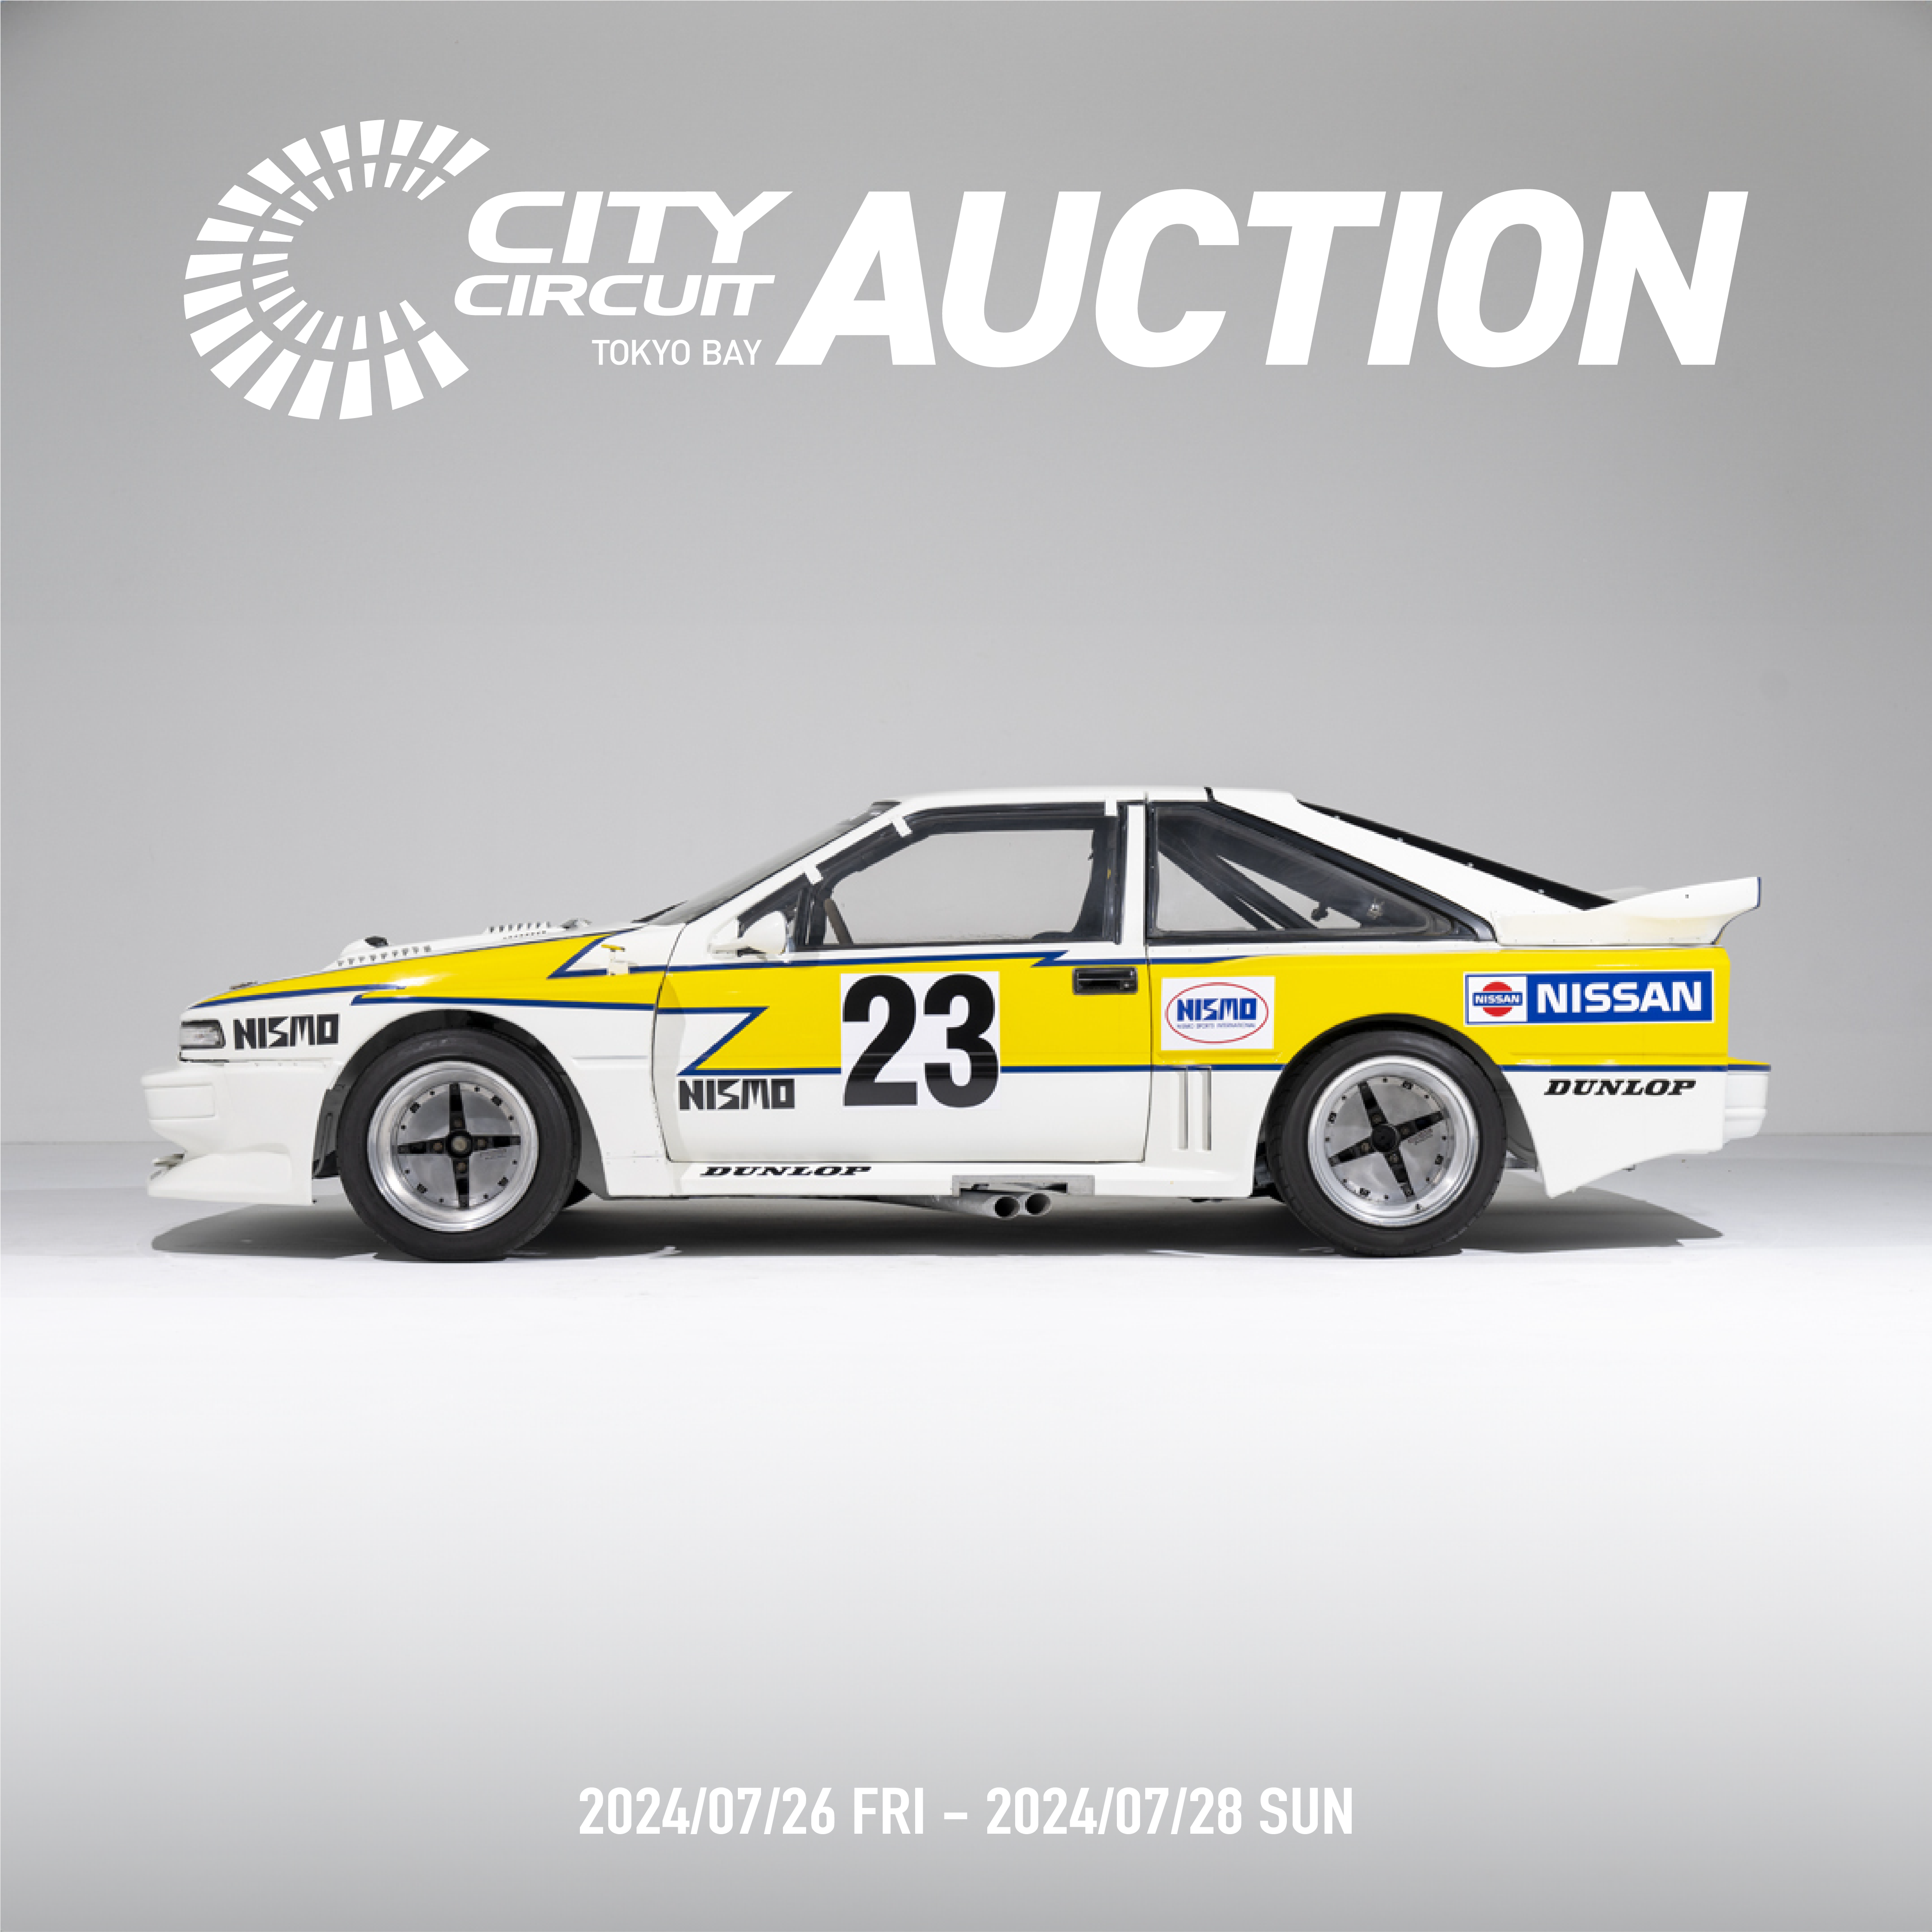 City Circuit Auction Photo